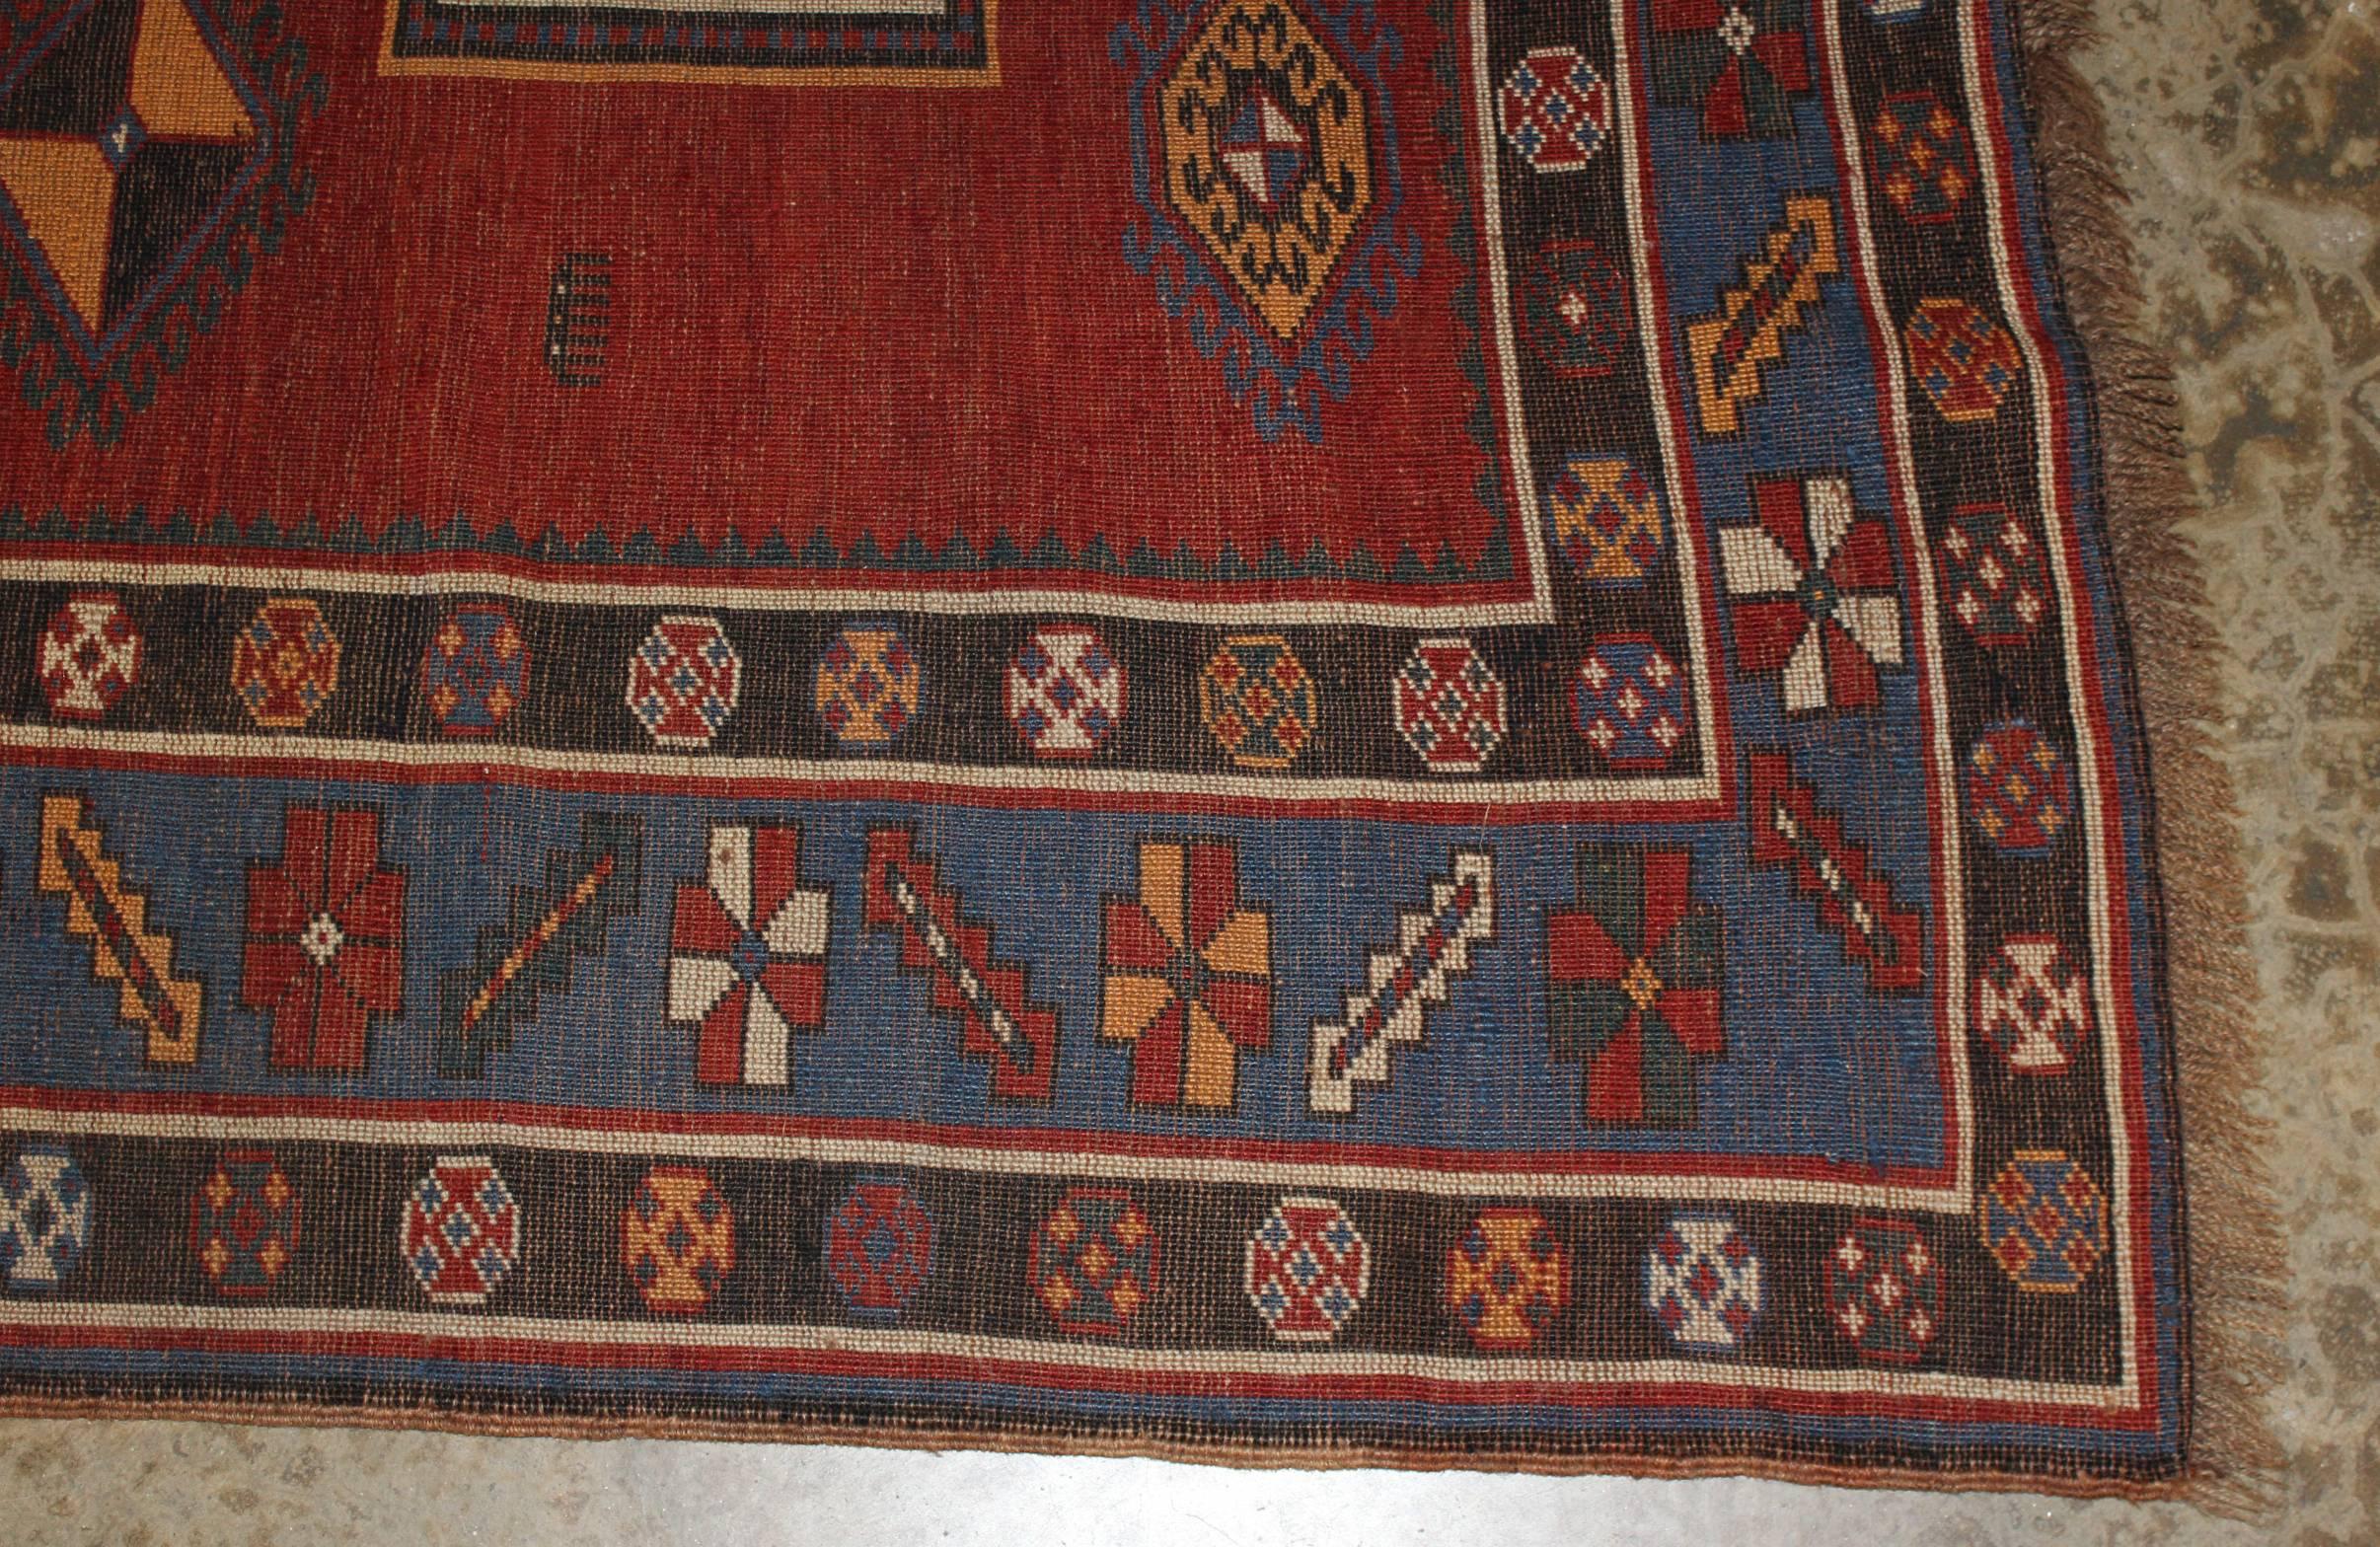 Kazak Scatter Rug or Carpet circa 1900 3